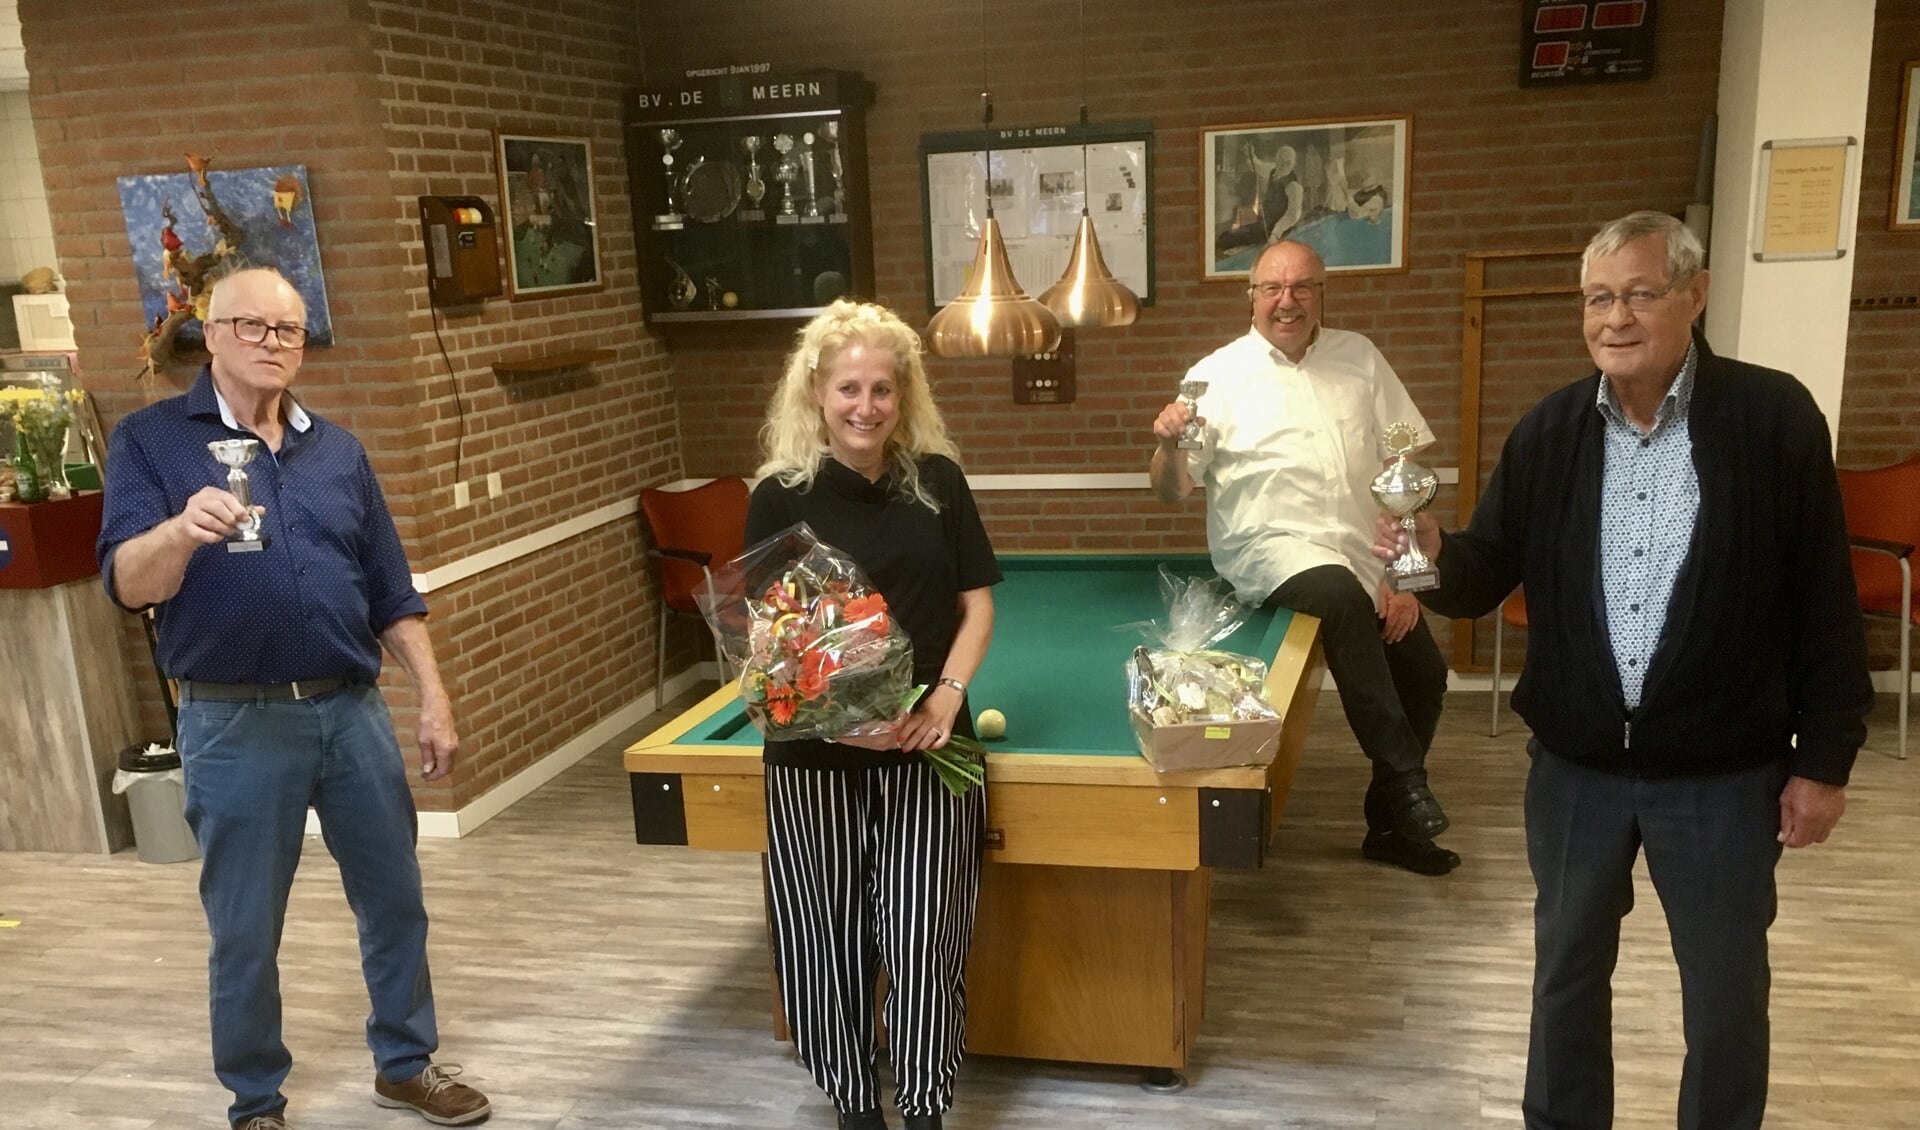 V.l.n.r. Jan Romijn, Conny Verkerk, Lodewijk van Eijk en Arie Miltenburg